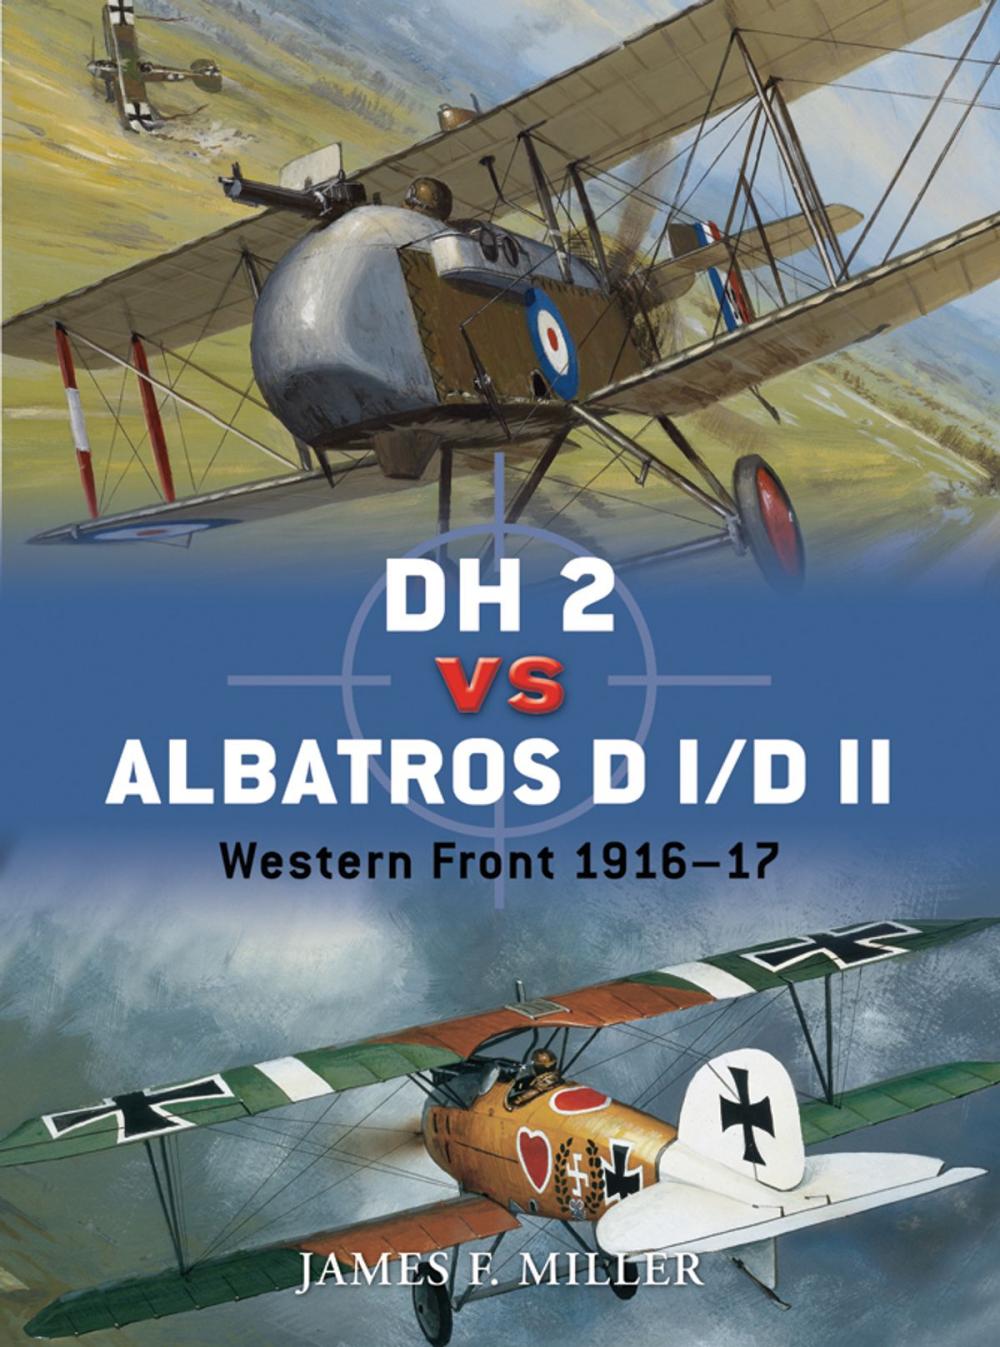 Big bigCover of DH 2 vs Albatros D I/D II